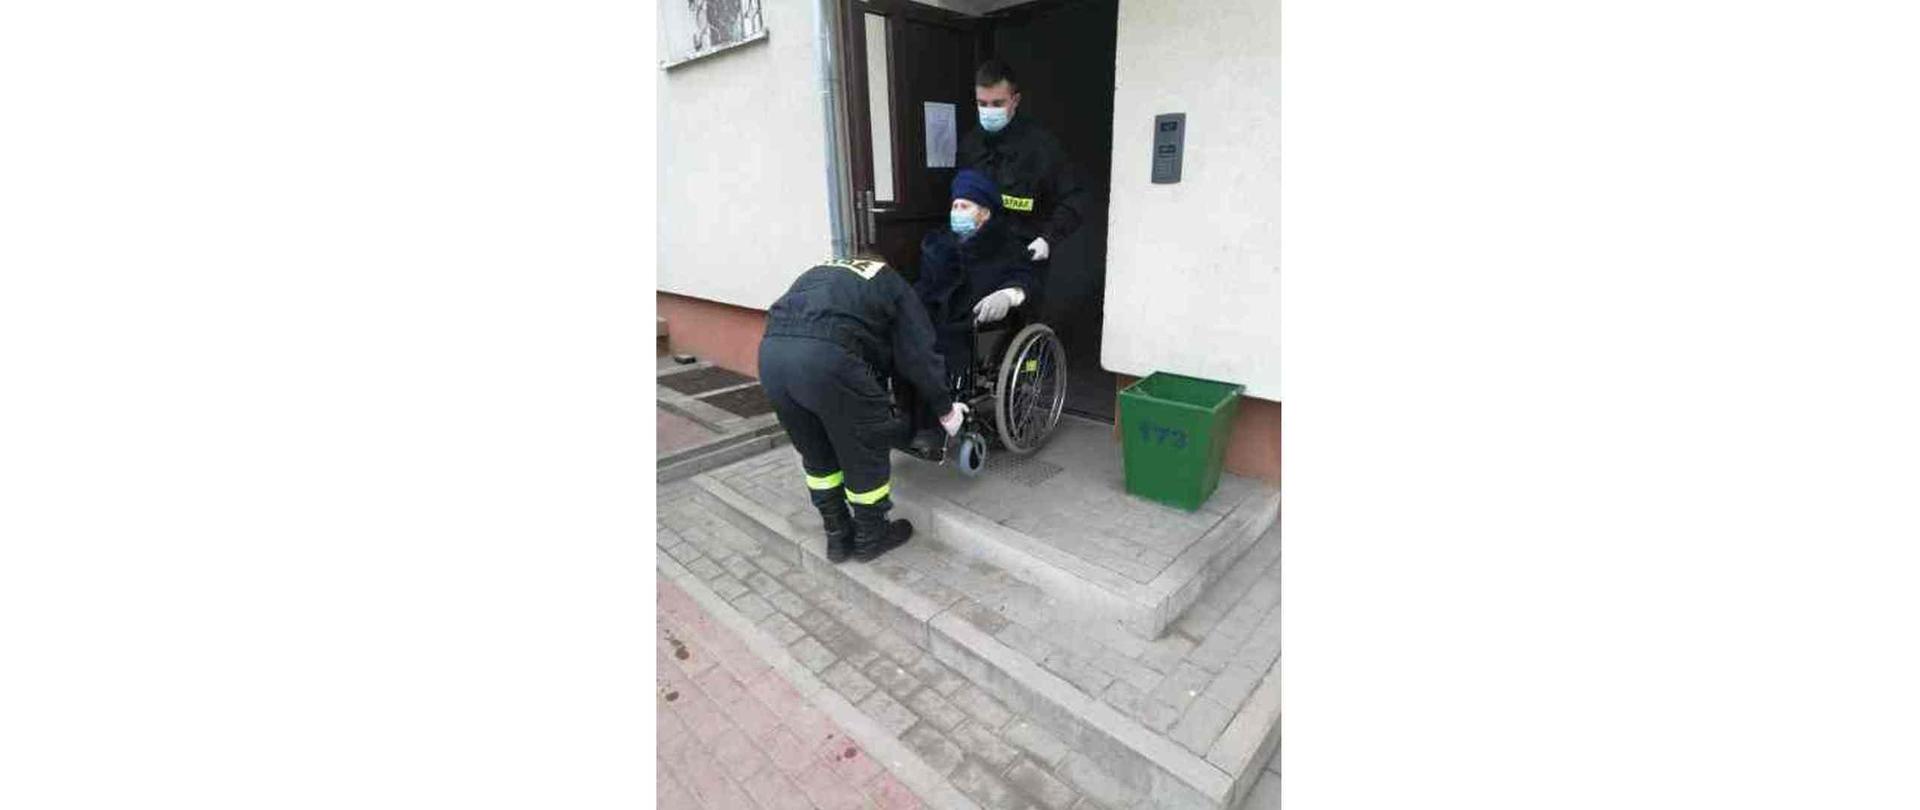 Dwóch strażaków znoszących kobietę na wózku inwalidzkim z klatki bloku mieszkalnego.